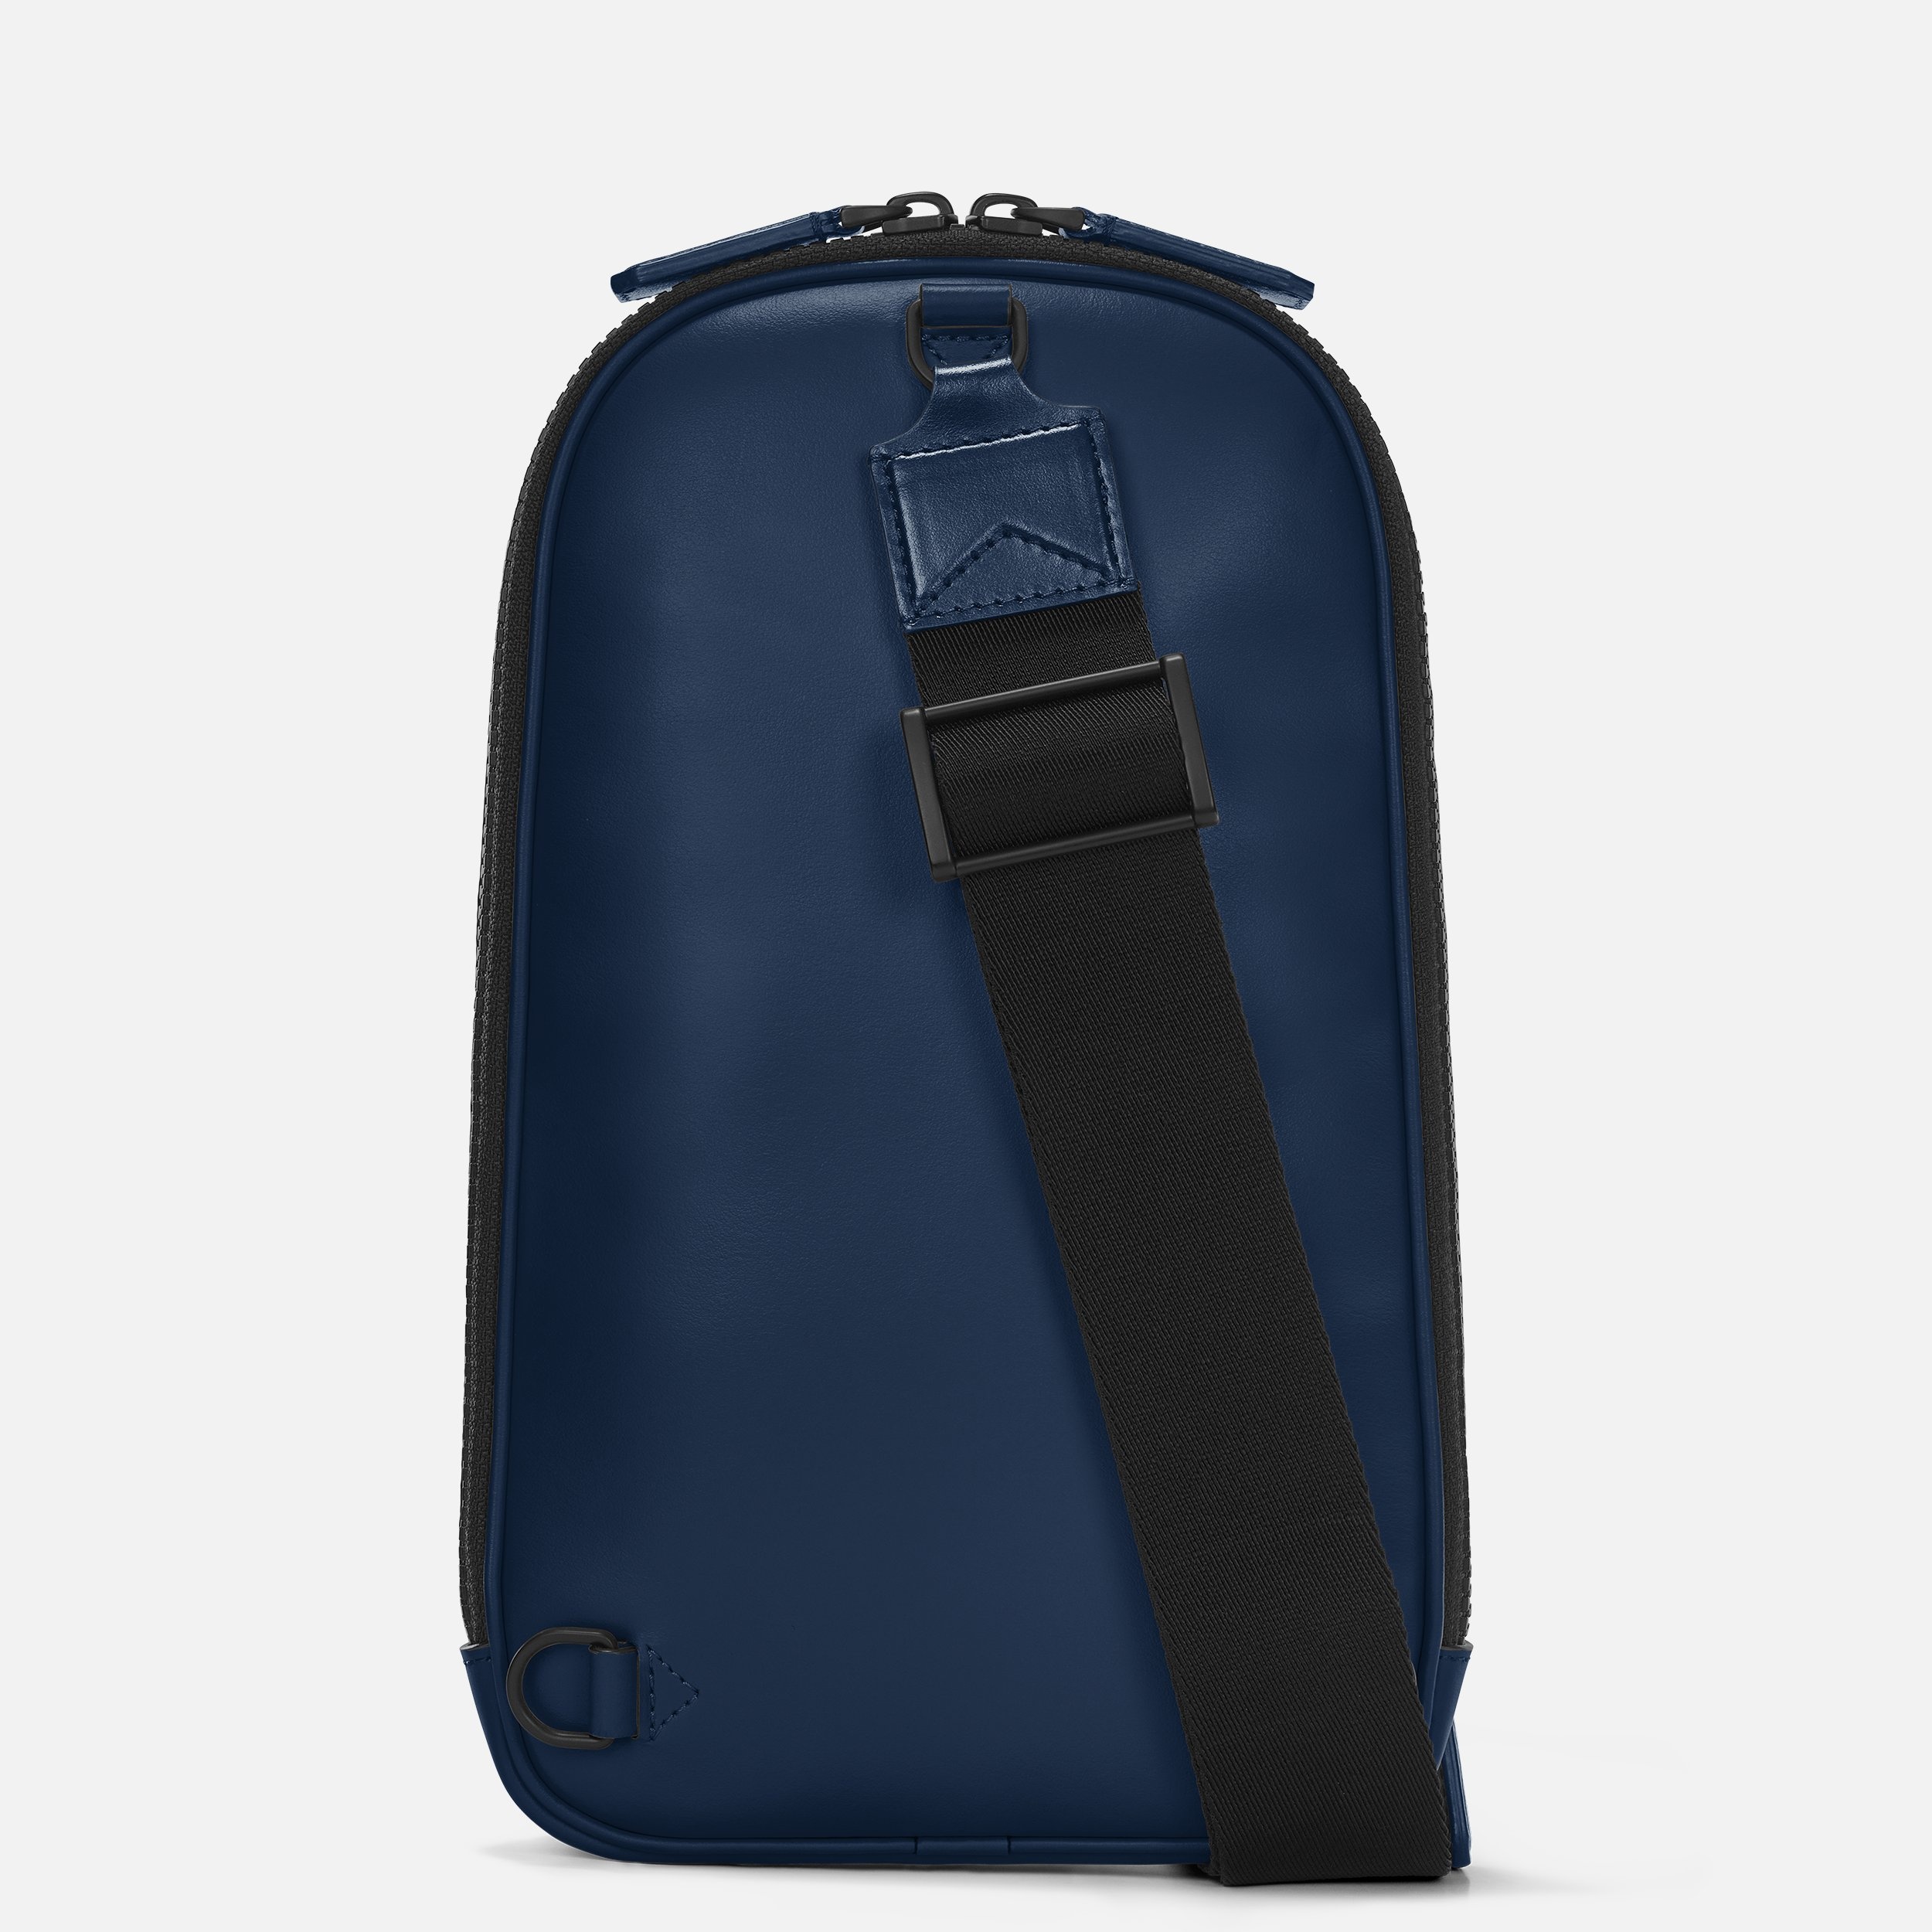 Extreme 3.0 sling bag - 3